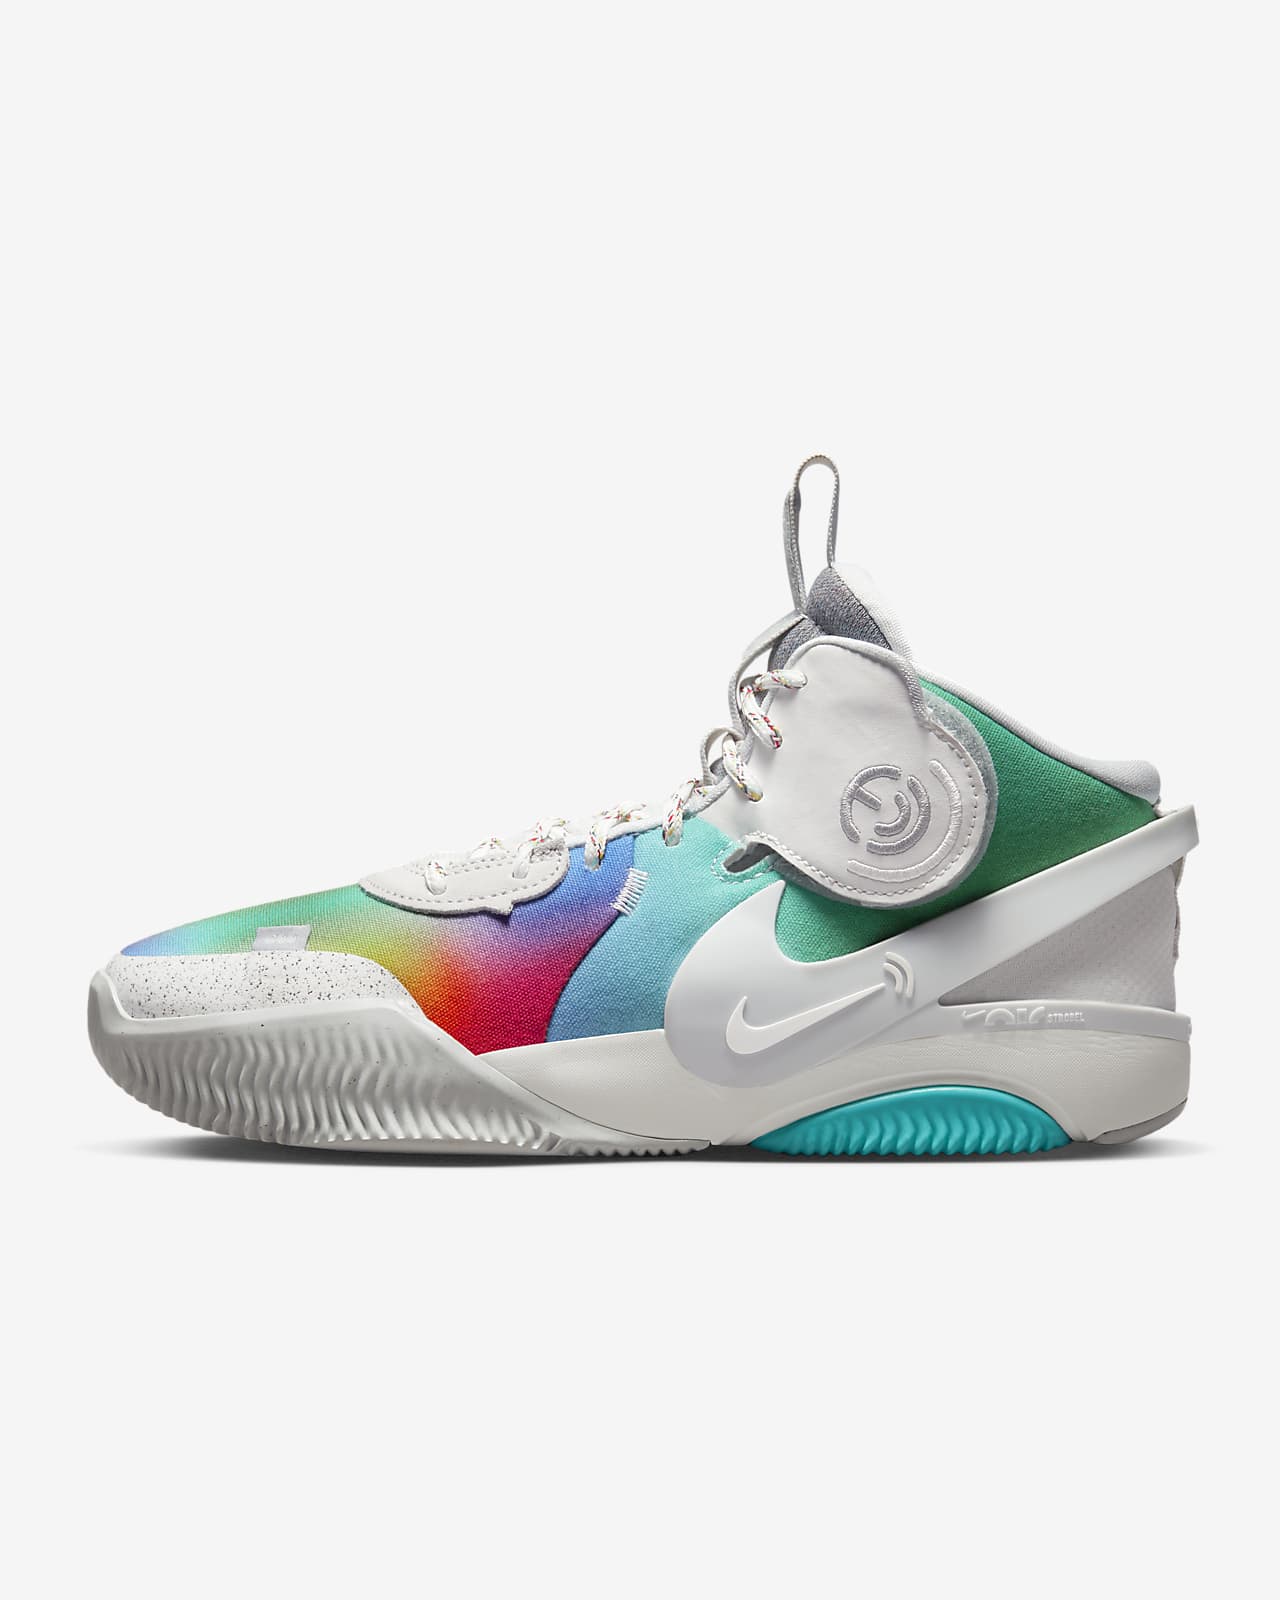 por ciento dentro de poco Verdulero Nike Air Deldon Be True Basketball Shoes. Nike.com